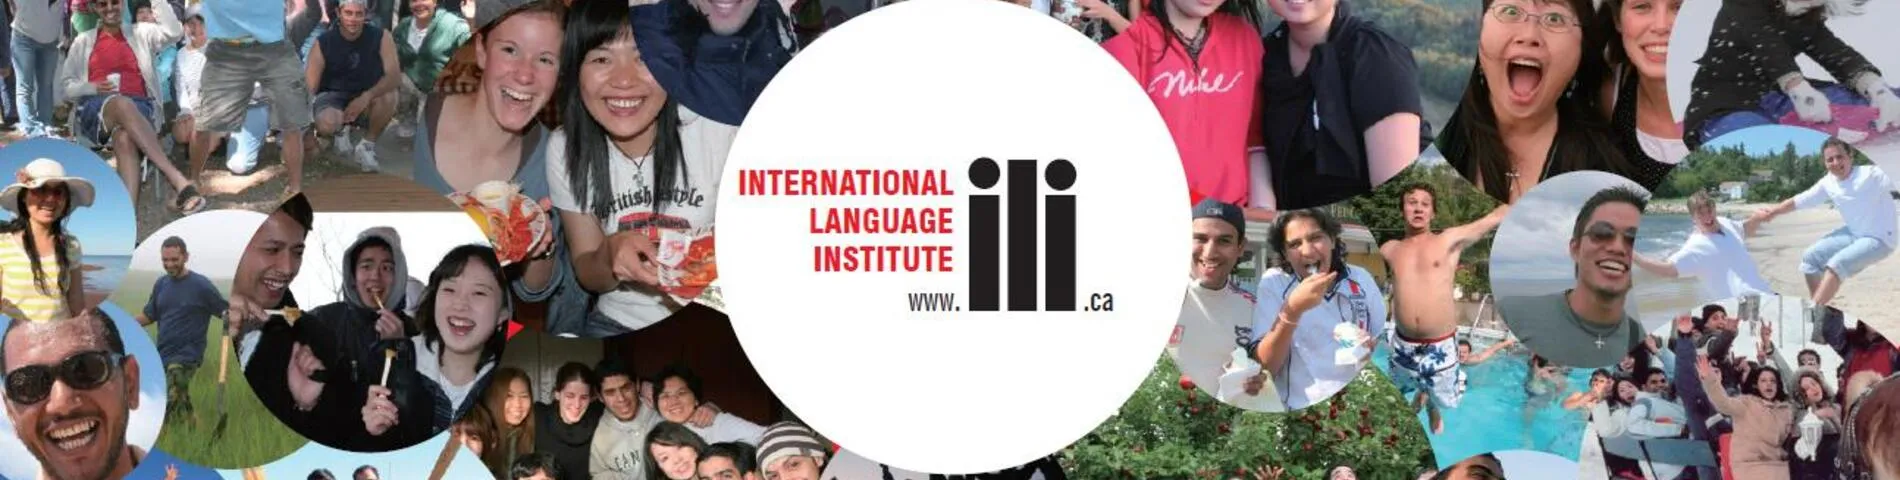 ILI - International Language Institute画像1